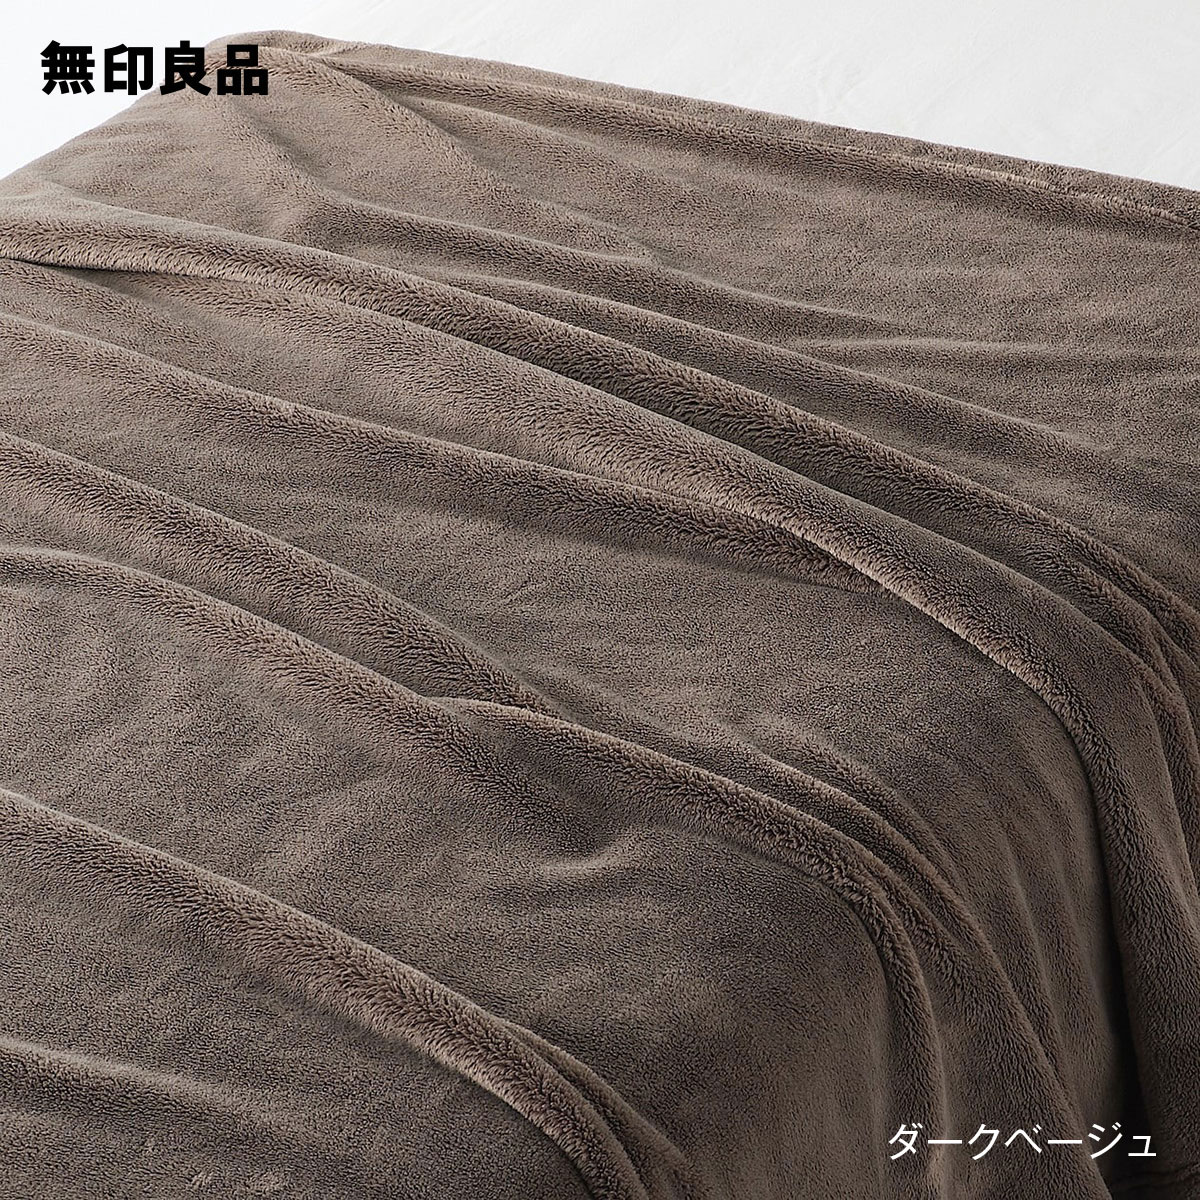 【無印良品 公式】【ダブル】ムレにくいあたたかファイバー厚手毛布・180 200cm